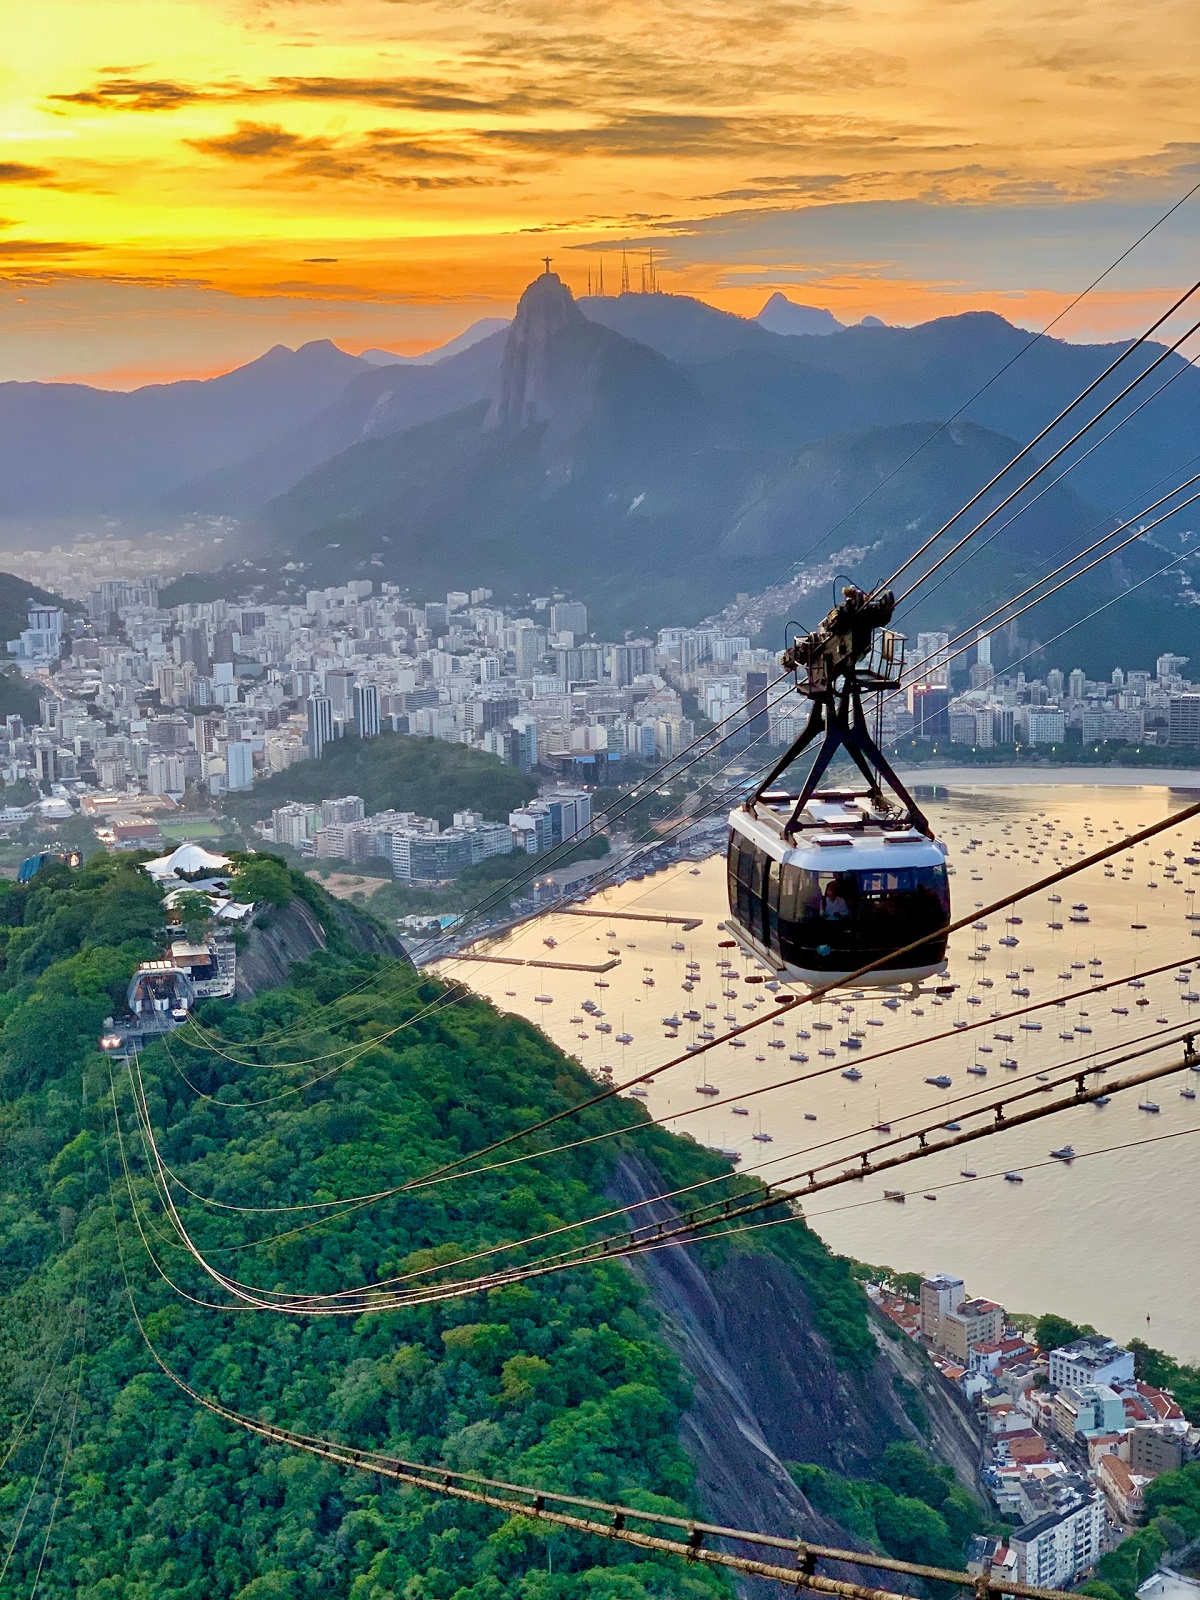 Brasil ocuparía el octavo lugar en el ranking de potencias mundiales para 2050 y 2075 (Imagen referencial: Raphael Nogueira en Unsplash)